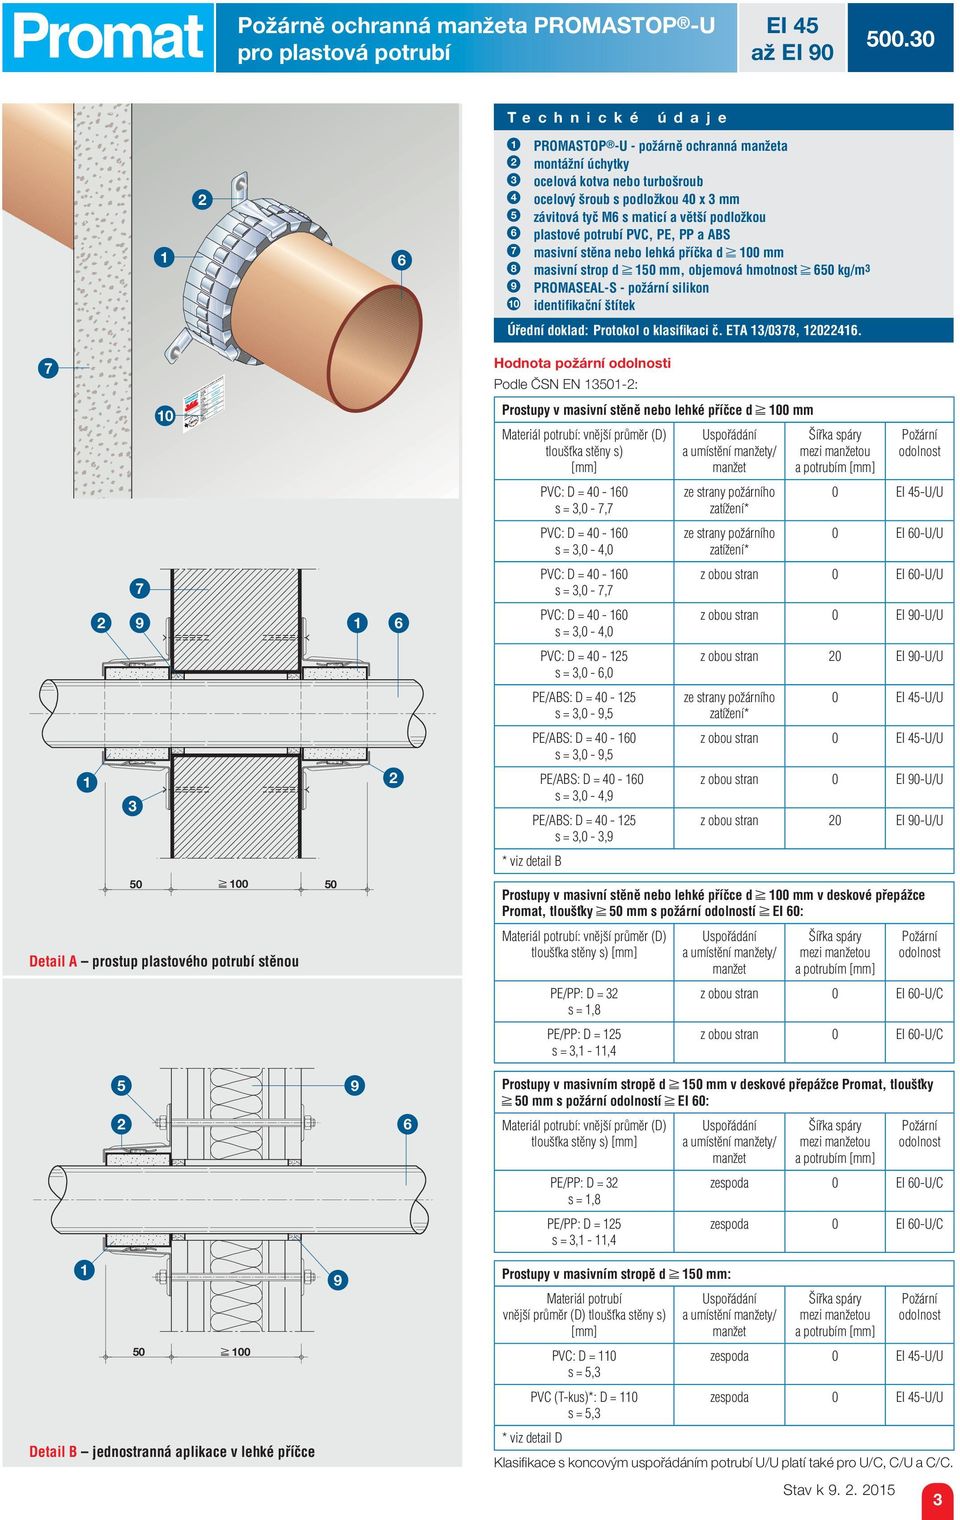 PVC, PE, PP a ABS masivní stěna nebo lehká příčka d 00 mm masivní strop d 0 mm, objemová hmotnost 0 kg/m 9 PROMASEAL-S - požární silikon 0 identifi kační štítek Úřední doklad: Protokol o klasifi kaci